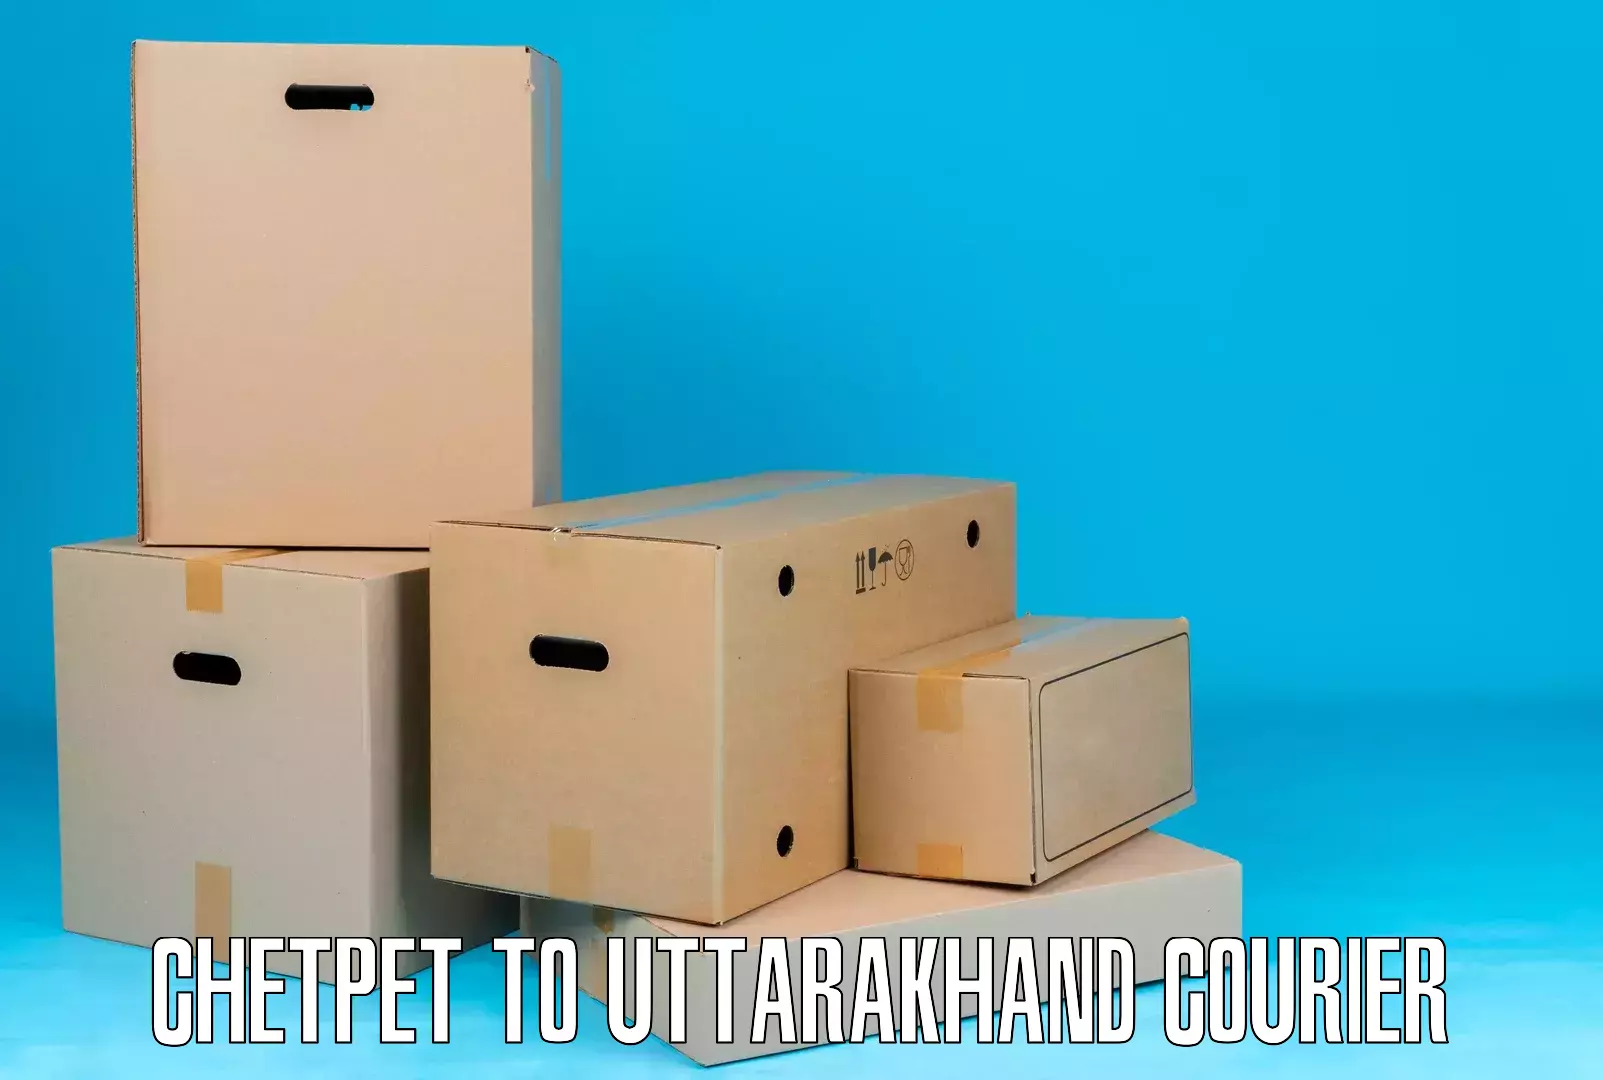 Innovative courier solutions Chetpet to Uttarakhand